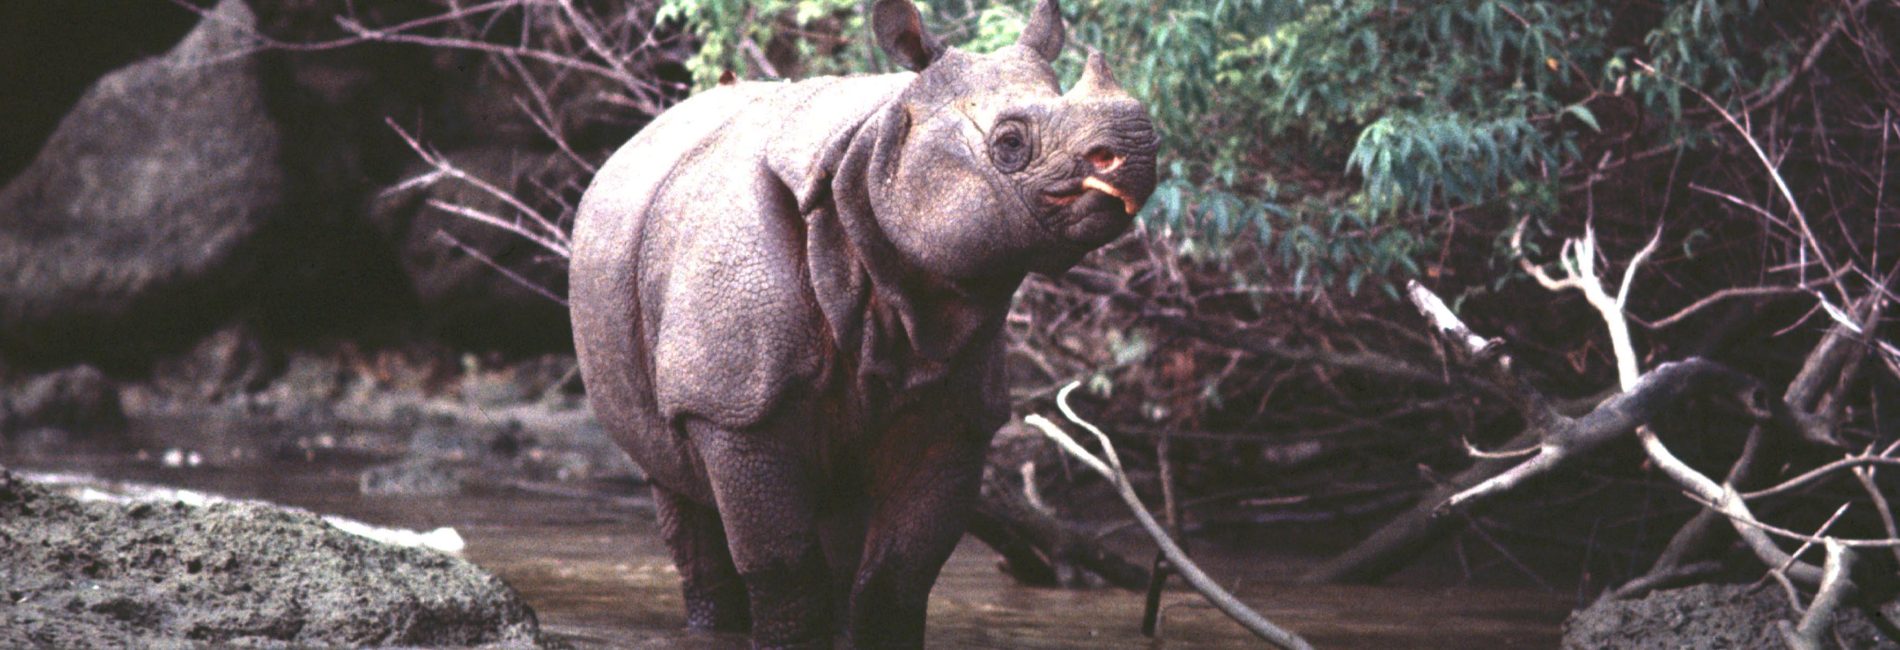 javan rhinoceros diet